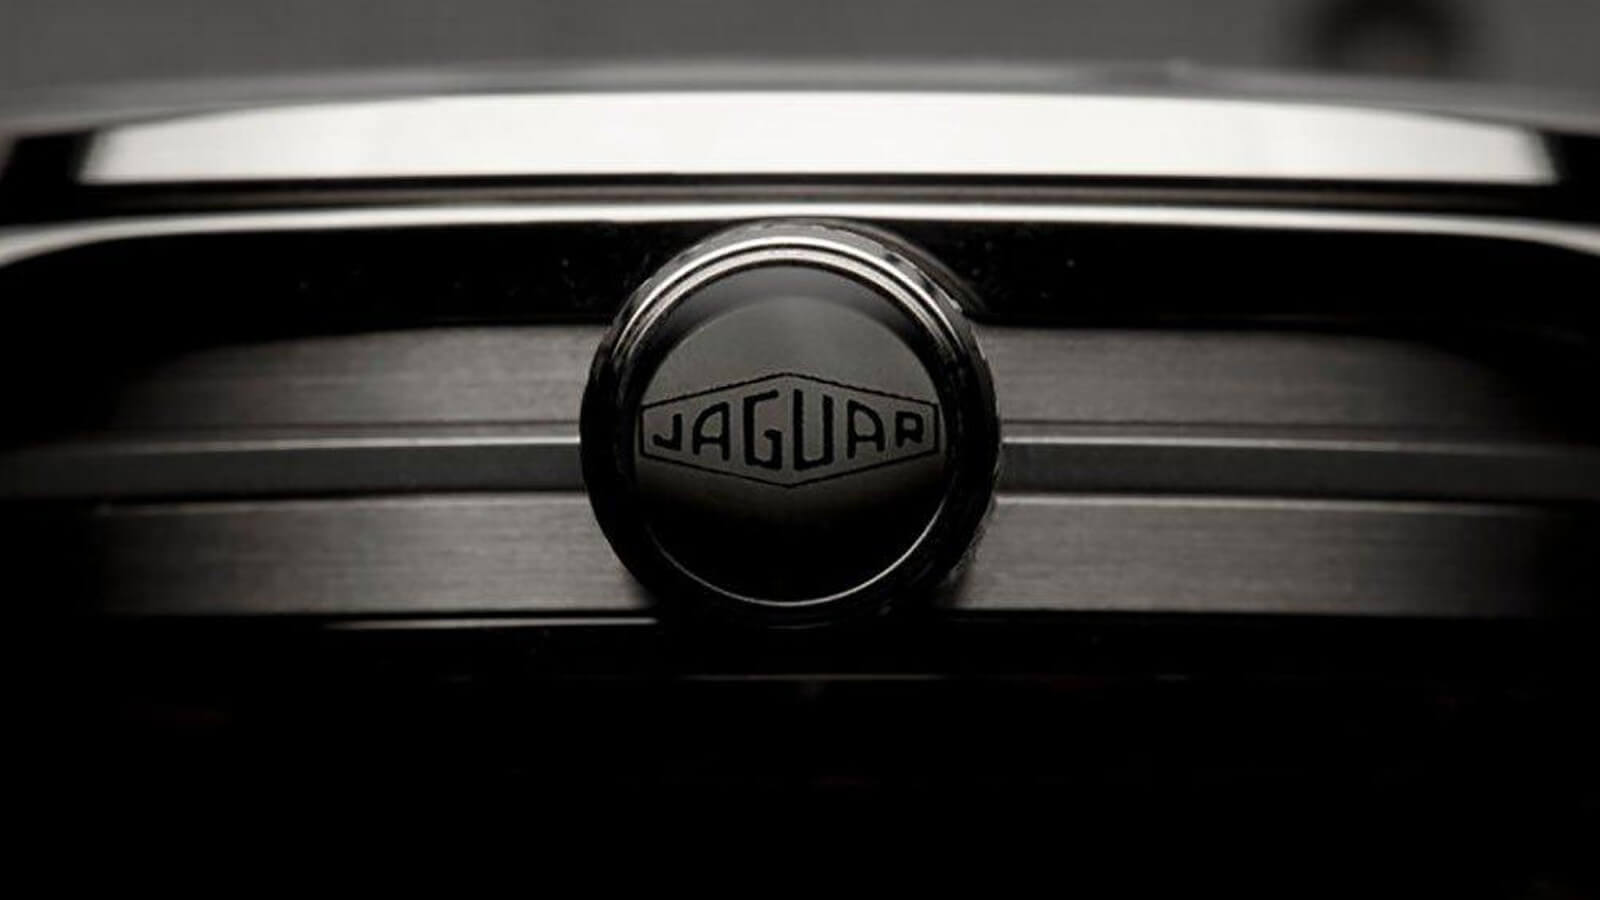  Bremont Jaguar MK1 Automatic